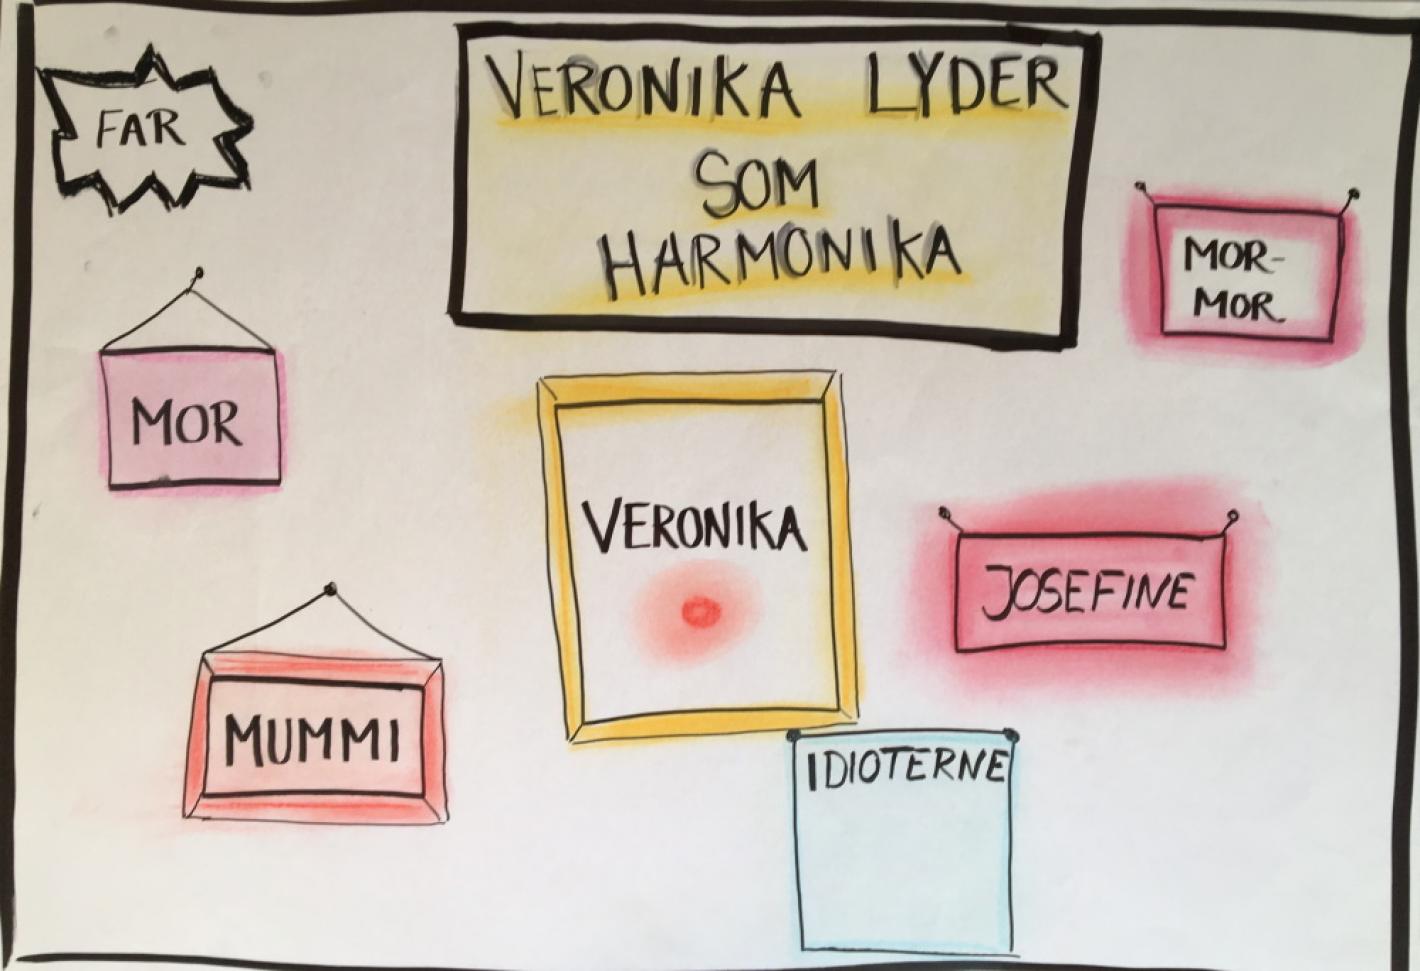 Billede fra bogen "Veronika lyder som Harmonika"